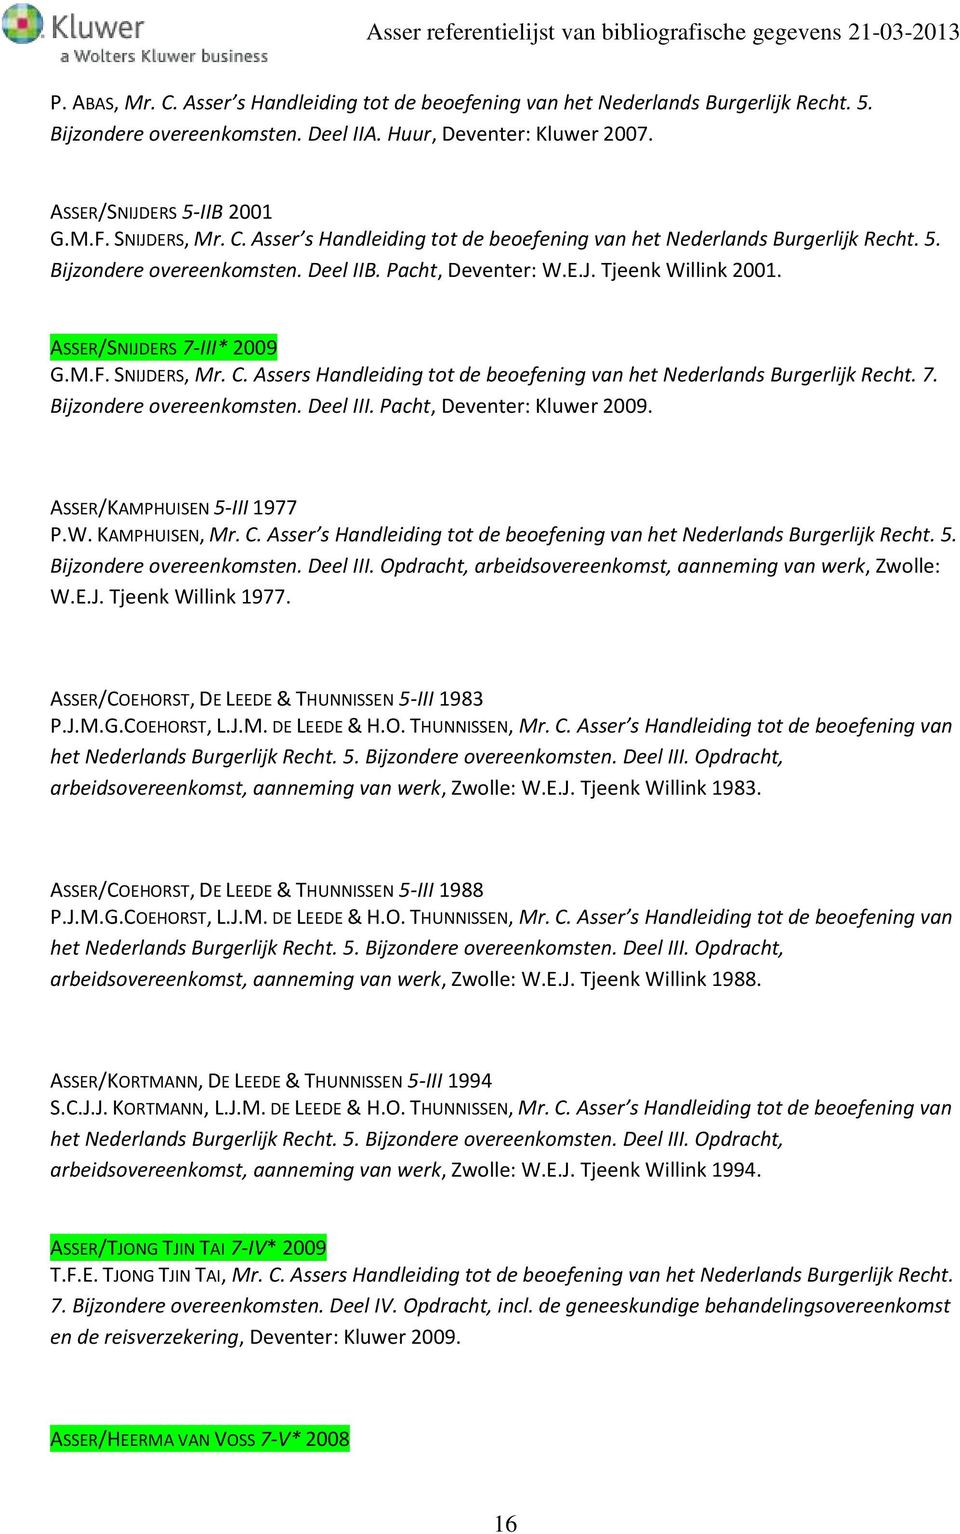 ASSER/SNIJDERS 7-III* 2009 G.M.F. SNIJDERS, Mr. C. Assers Handleiding tot de beoefening van het Nederlands Burgerlijk Recht. 7. Bijzondere overeenkomsten. Deel III. Pacht, Deventer: Kluwer 2009.